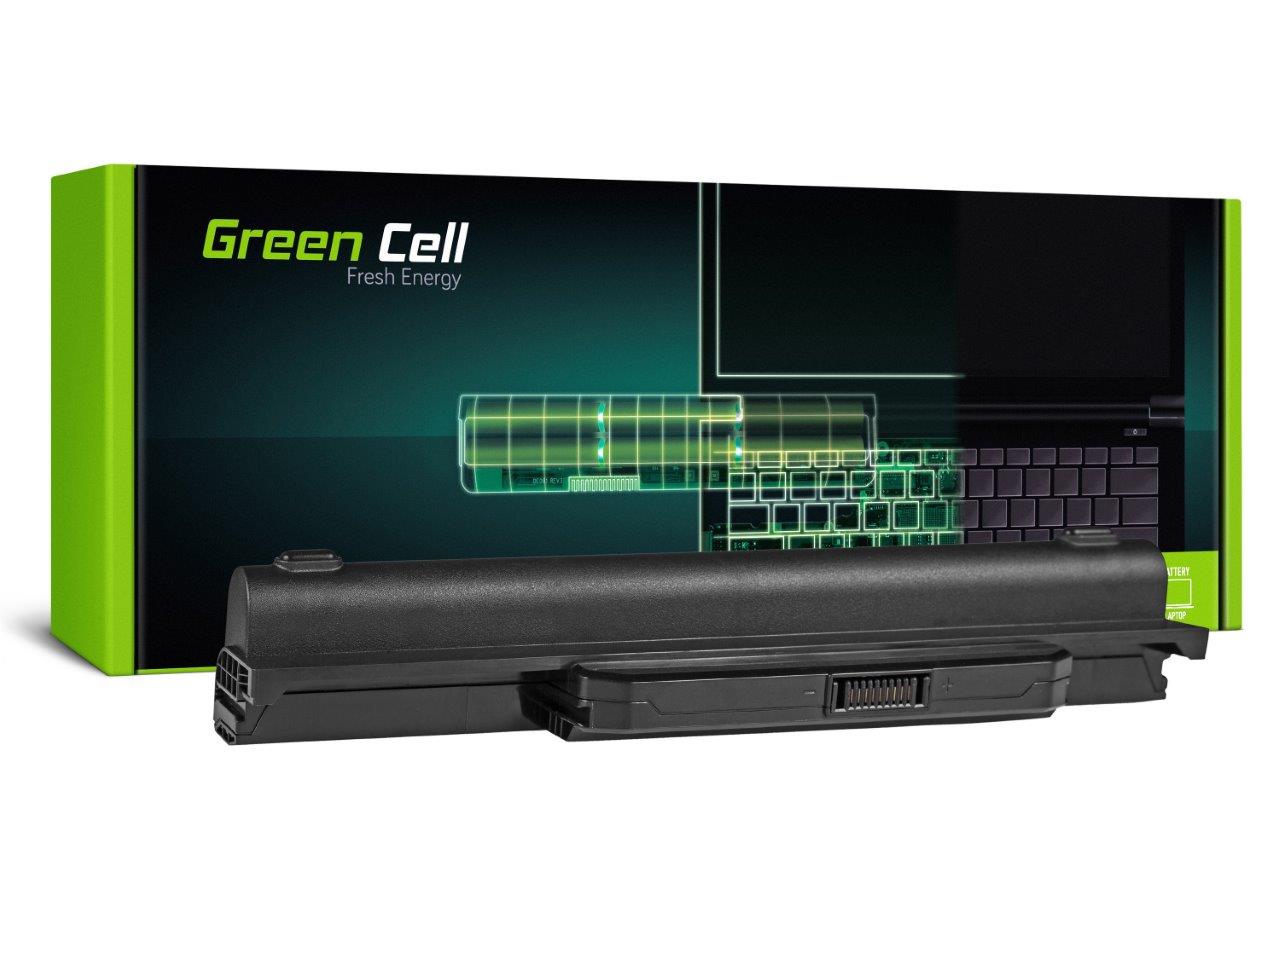 Laptop batteri till Asus A31-K53 X53S X53T K53E / 11,1V 6600mAh